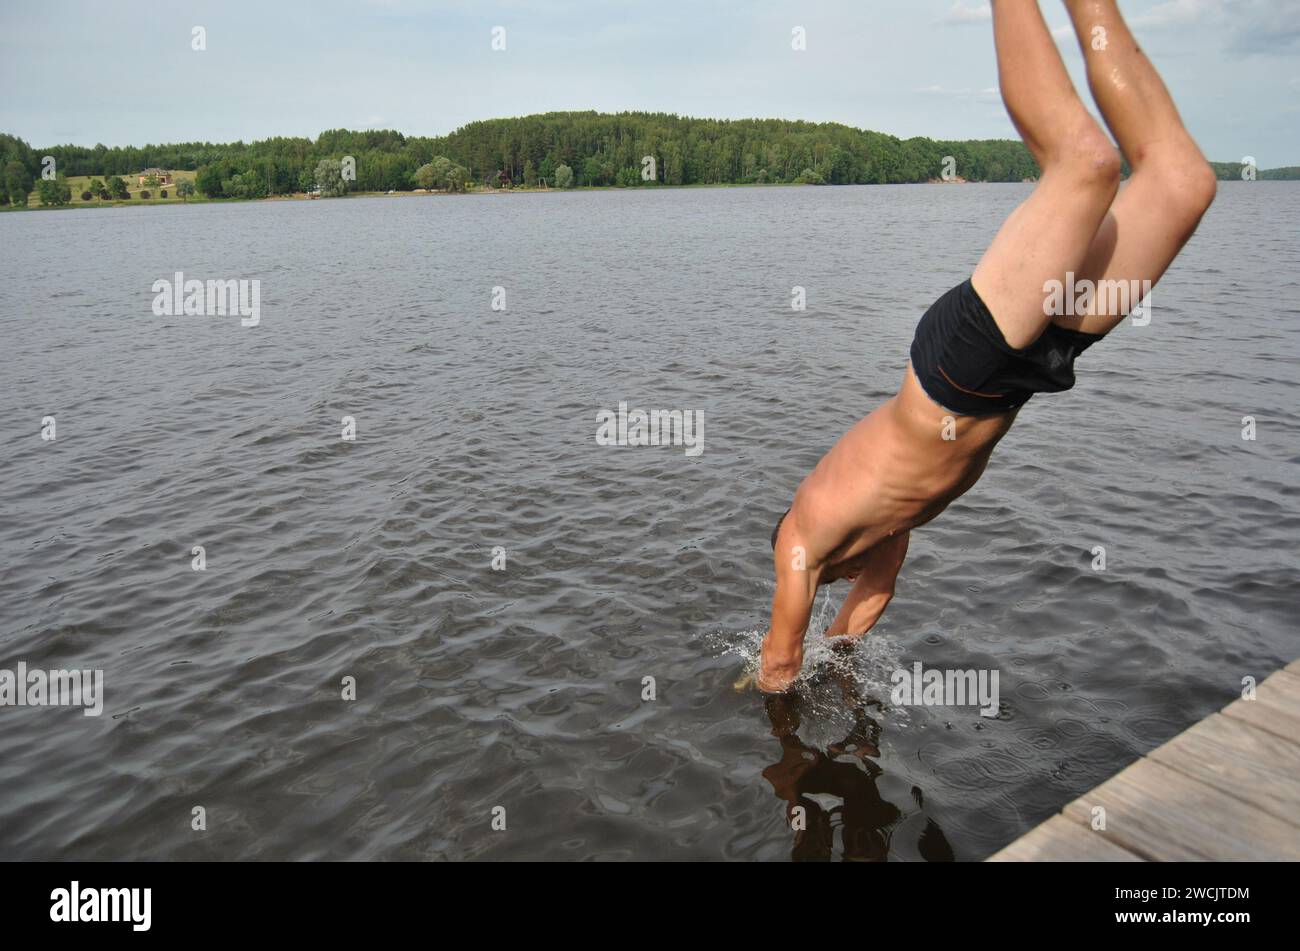 Man diving off a pier into the Daugava River in Sece, Latvia Stock Photo